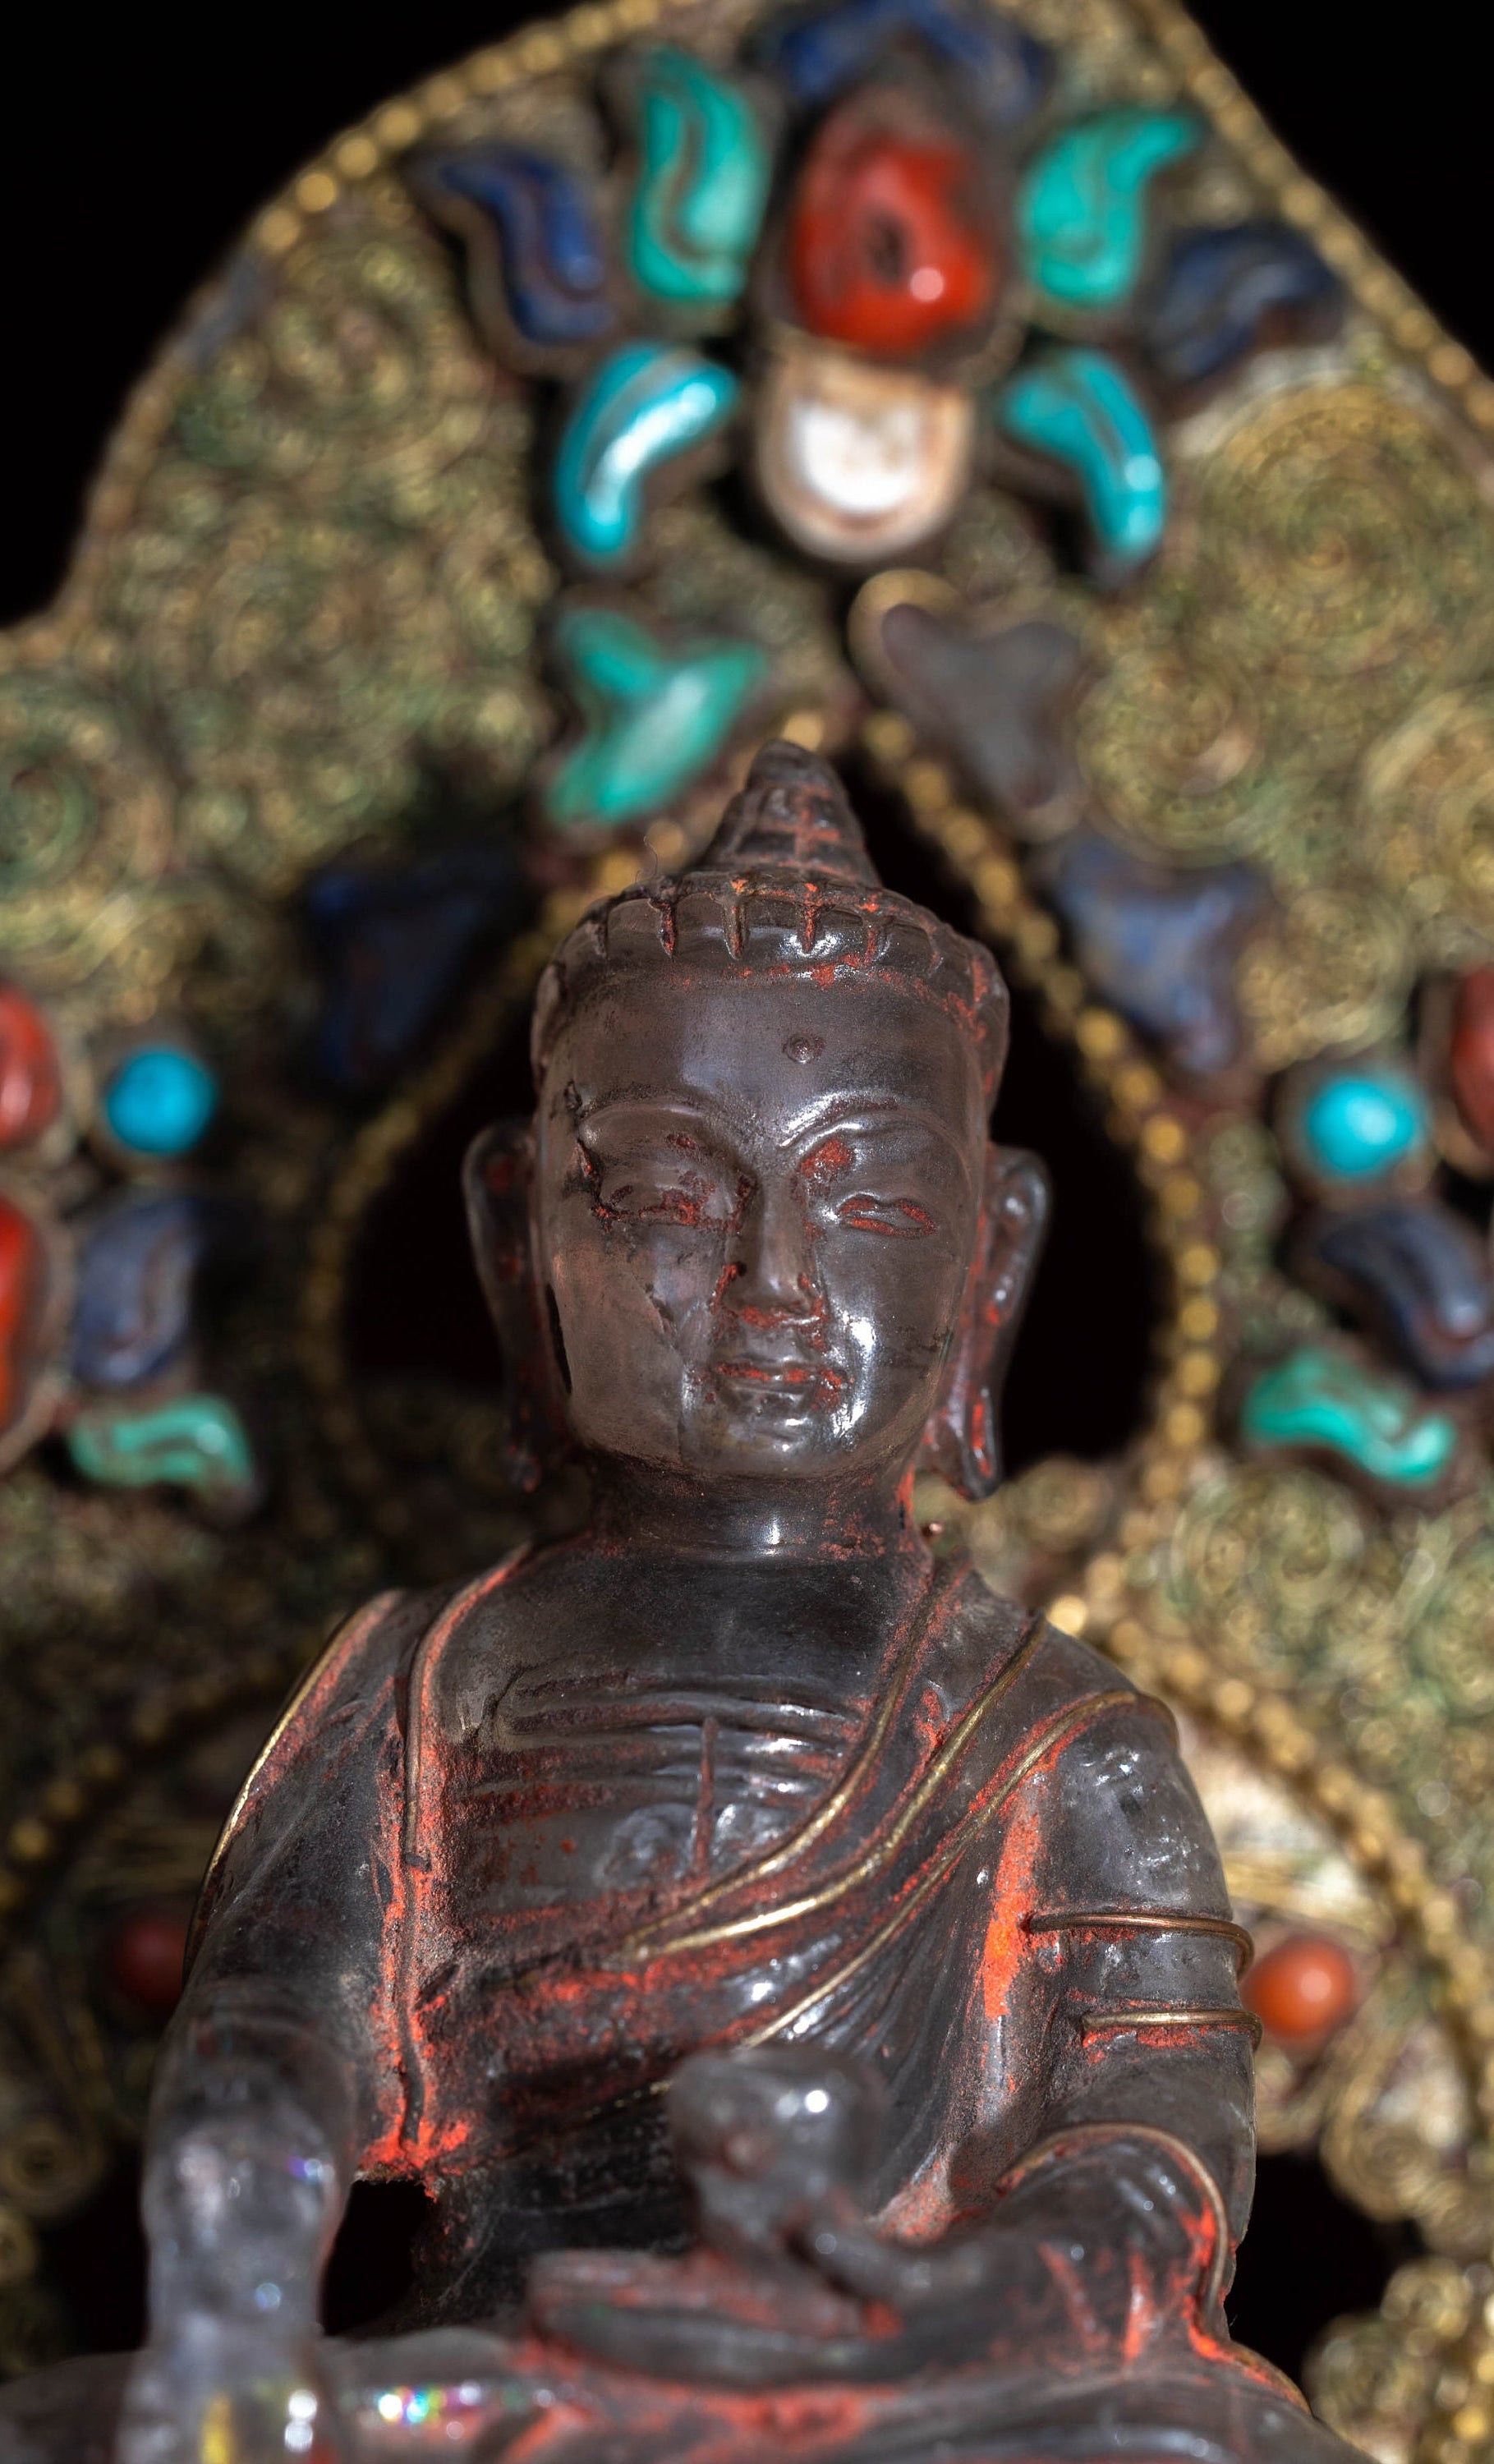 Crystal Shakyamuni Buddha statue - Lucky Thanka